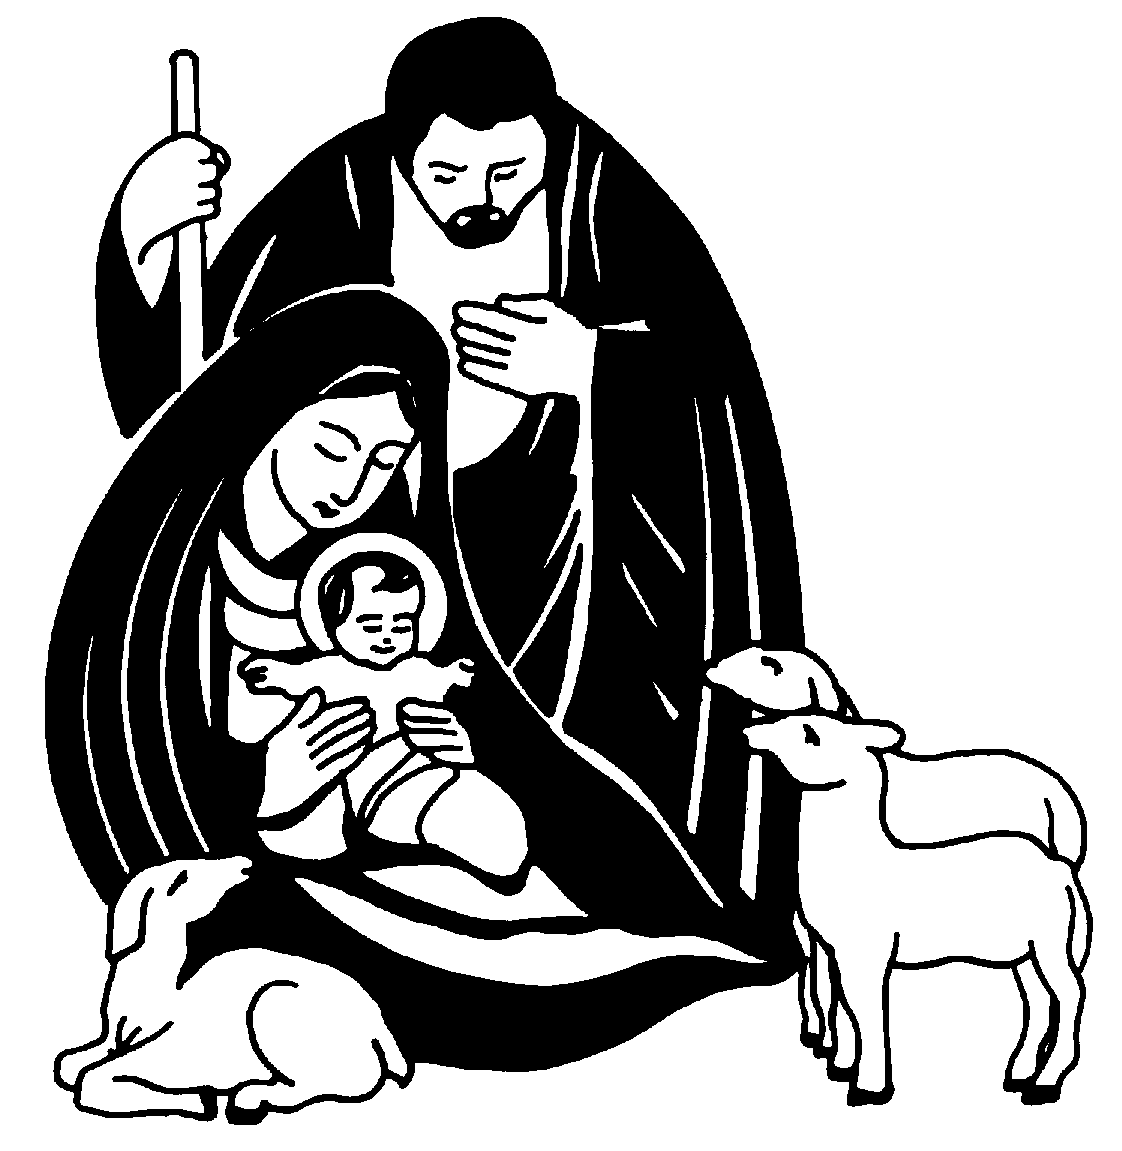 Free Jesus Birth Clipart, Download Free Clip Art, Free Clip.